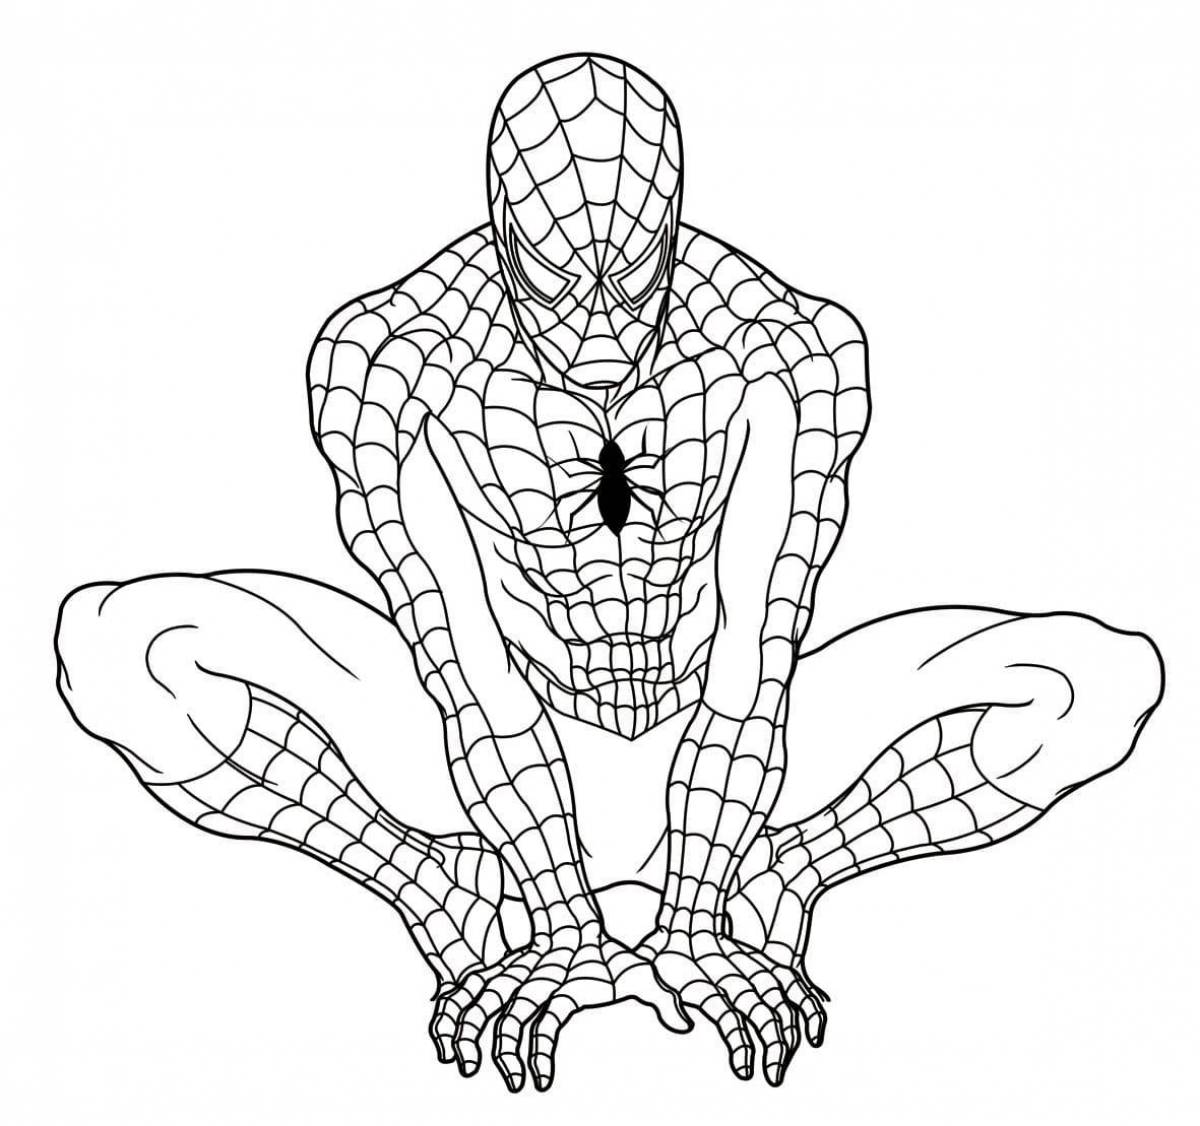 Богато детализированная страница раскраски человека-паука